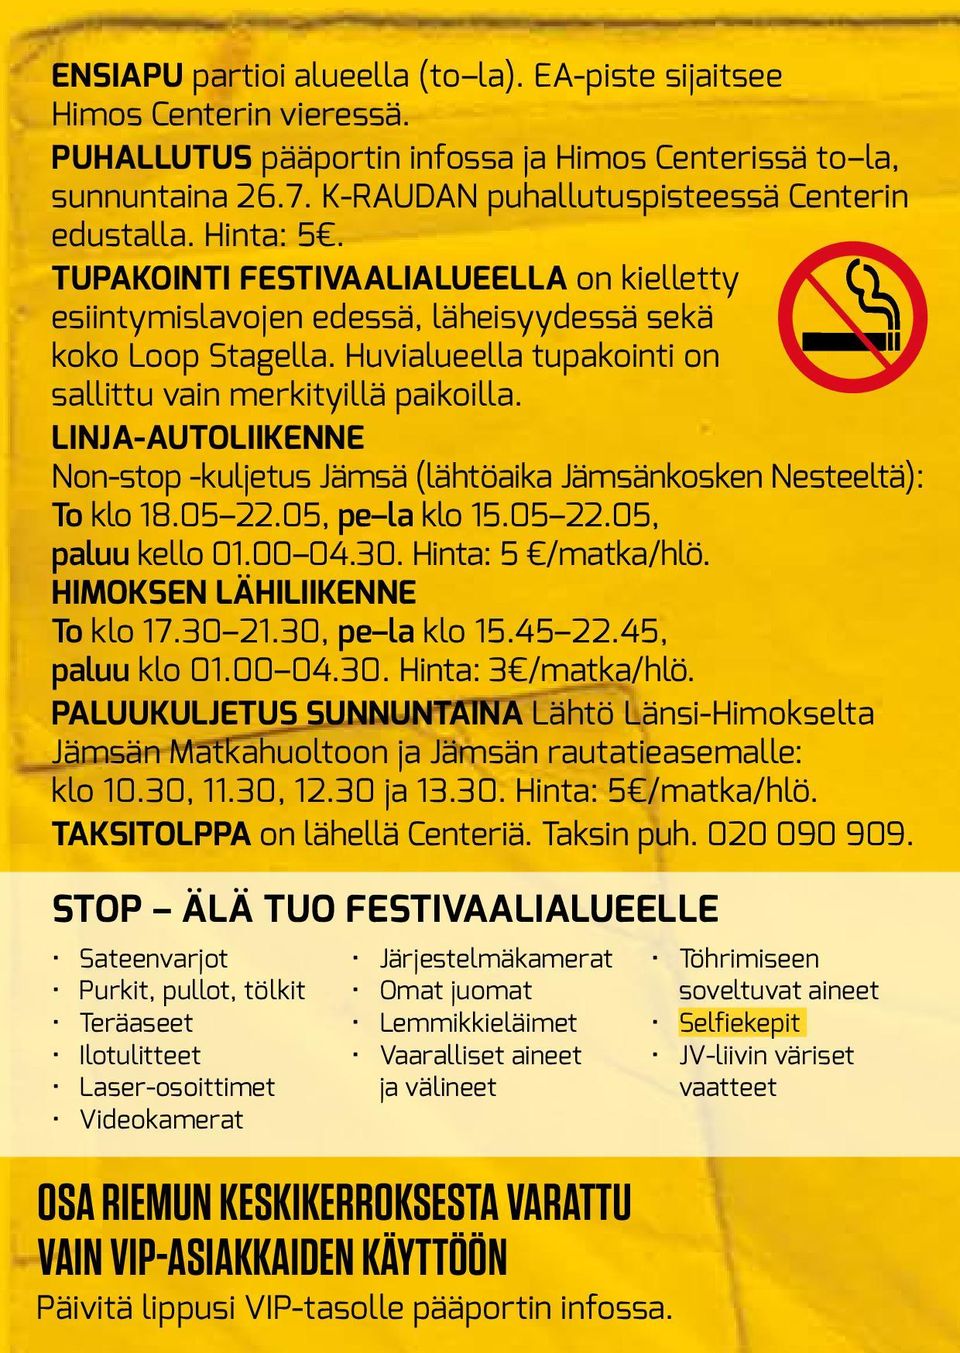 LINJA-AUTOLIIKENNE Non-stop -kuljetus Jämsä (lähtöaika Jämsänkosken Nesteeltä): To klo 18.05 22.05, pe la klo 15.05 22.05, paluu kello 01.00 04.30. Hinta: 5 /matka/hlö.